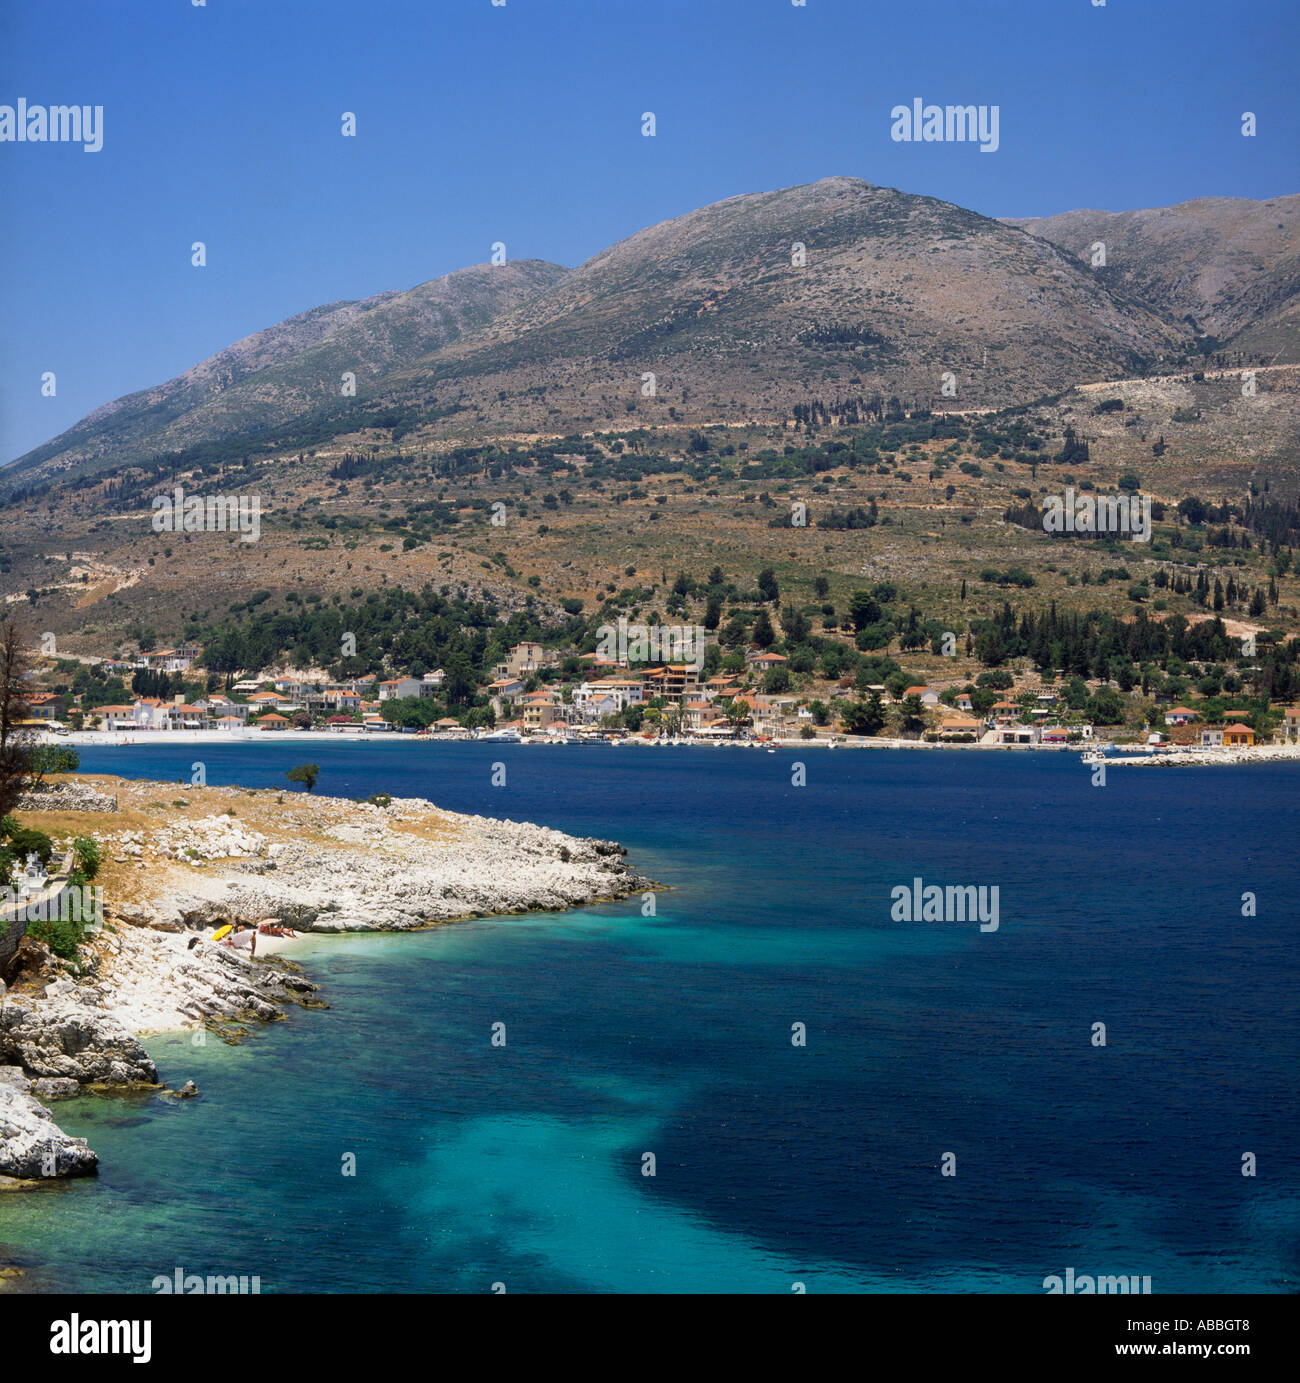 Idyllische Szene von einem Strand und sonnigen blauen Himmel in der Nähe von Agia Efimia Kephallonia die Ionischen Inseln griechische Inseln Griechenlands Stockfoto